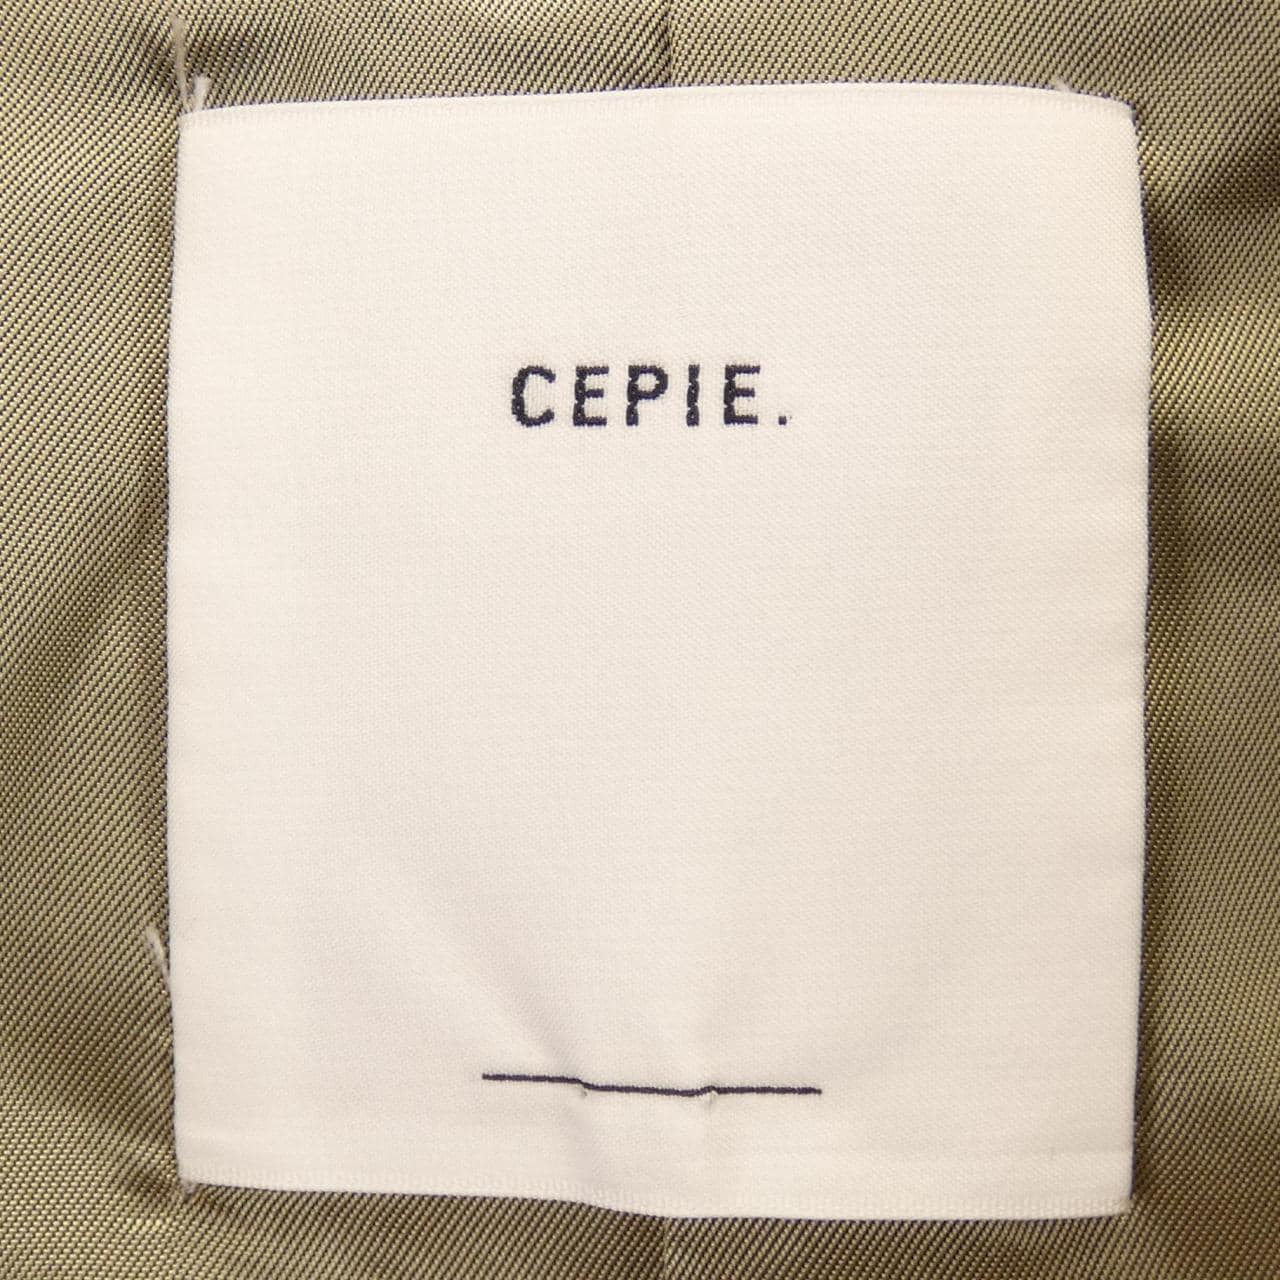 CEPIE coat